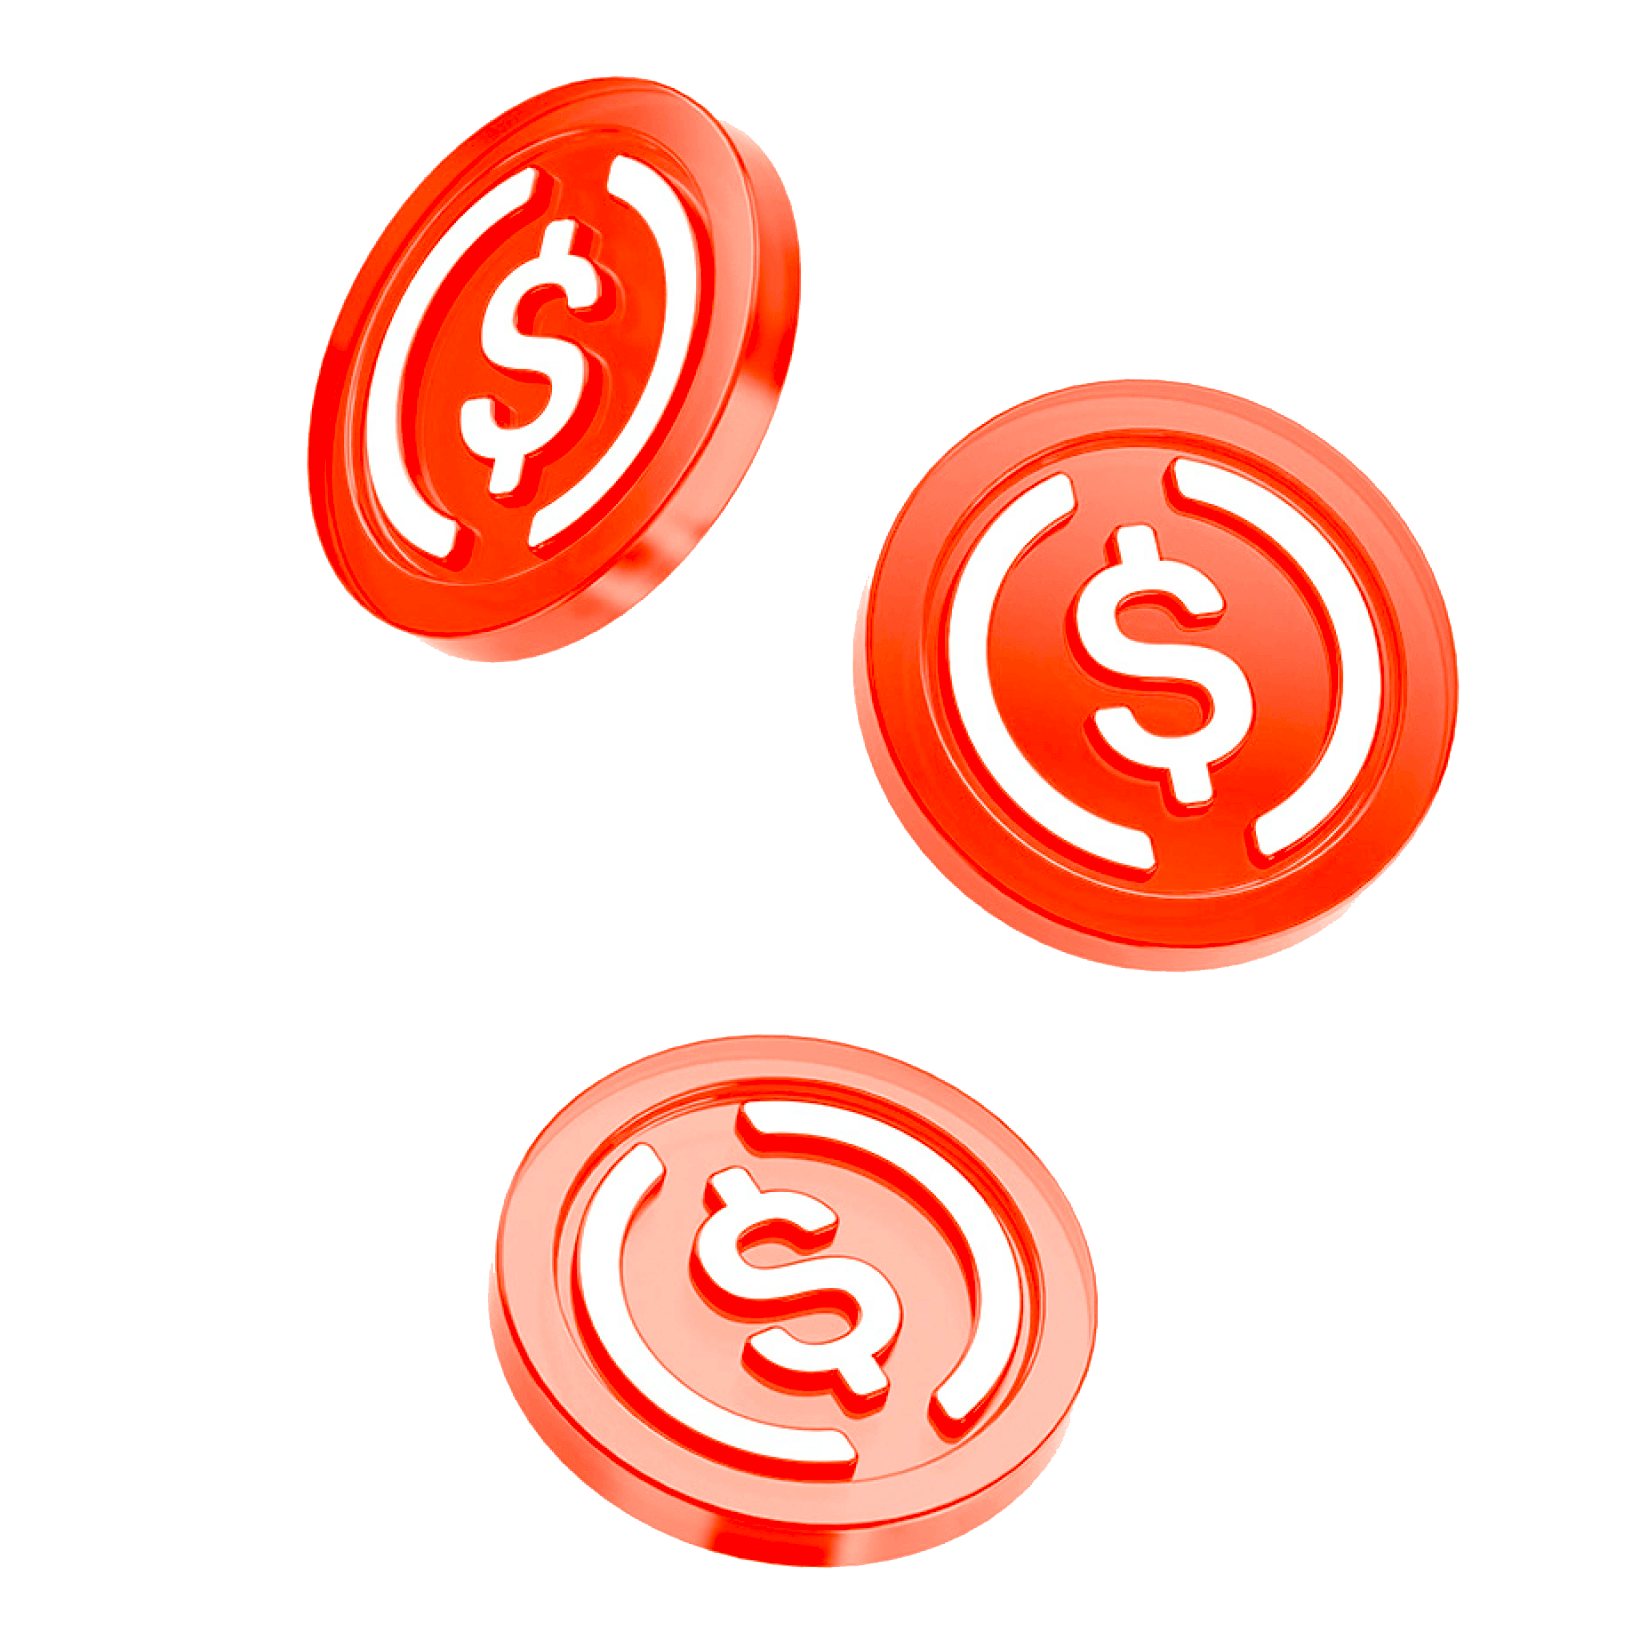 USDC crypto coins